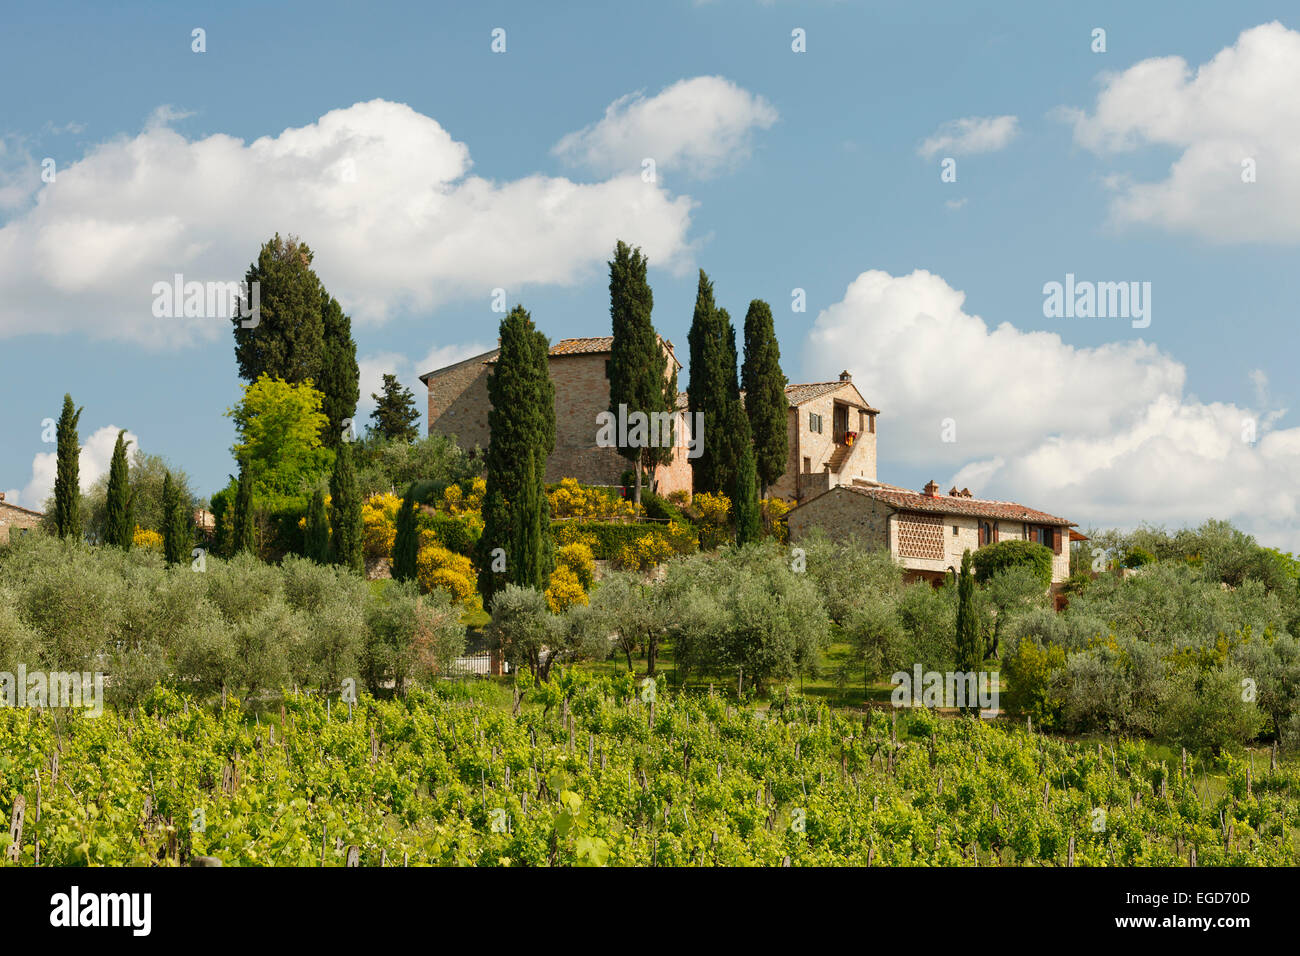 Vineyard and country manor near San Gimignano, province of Siena, Tuscany, Italy, Europe Stock Photo